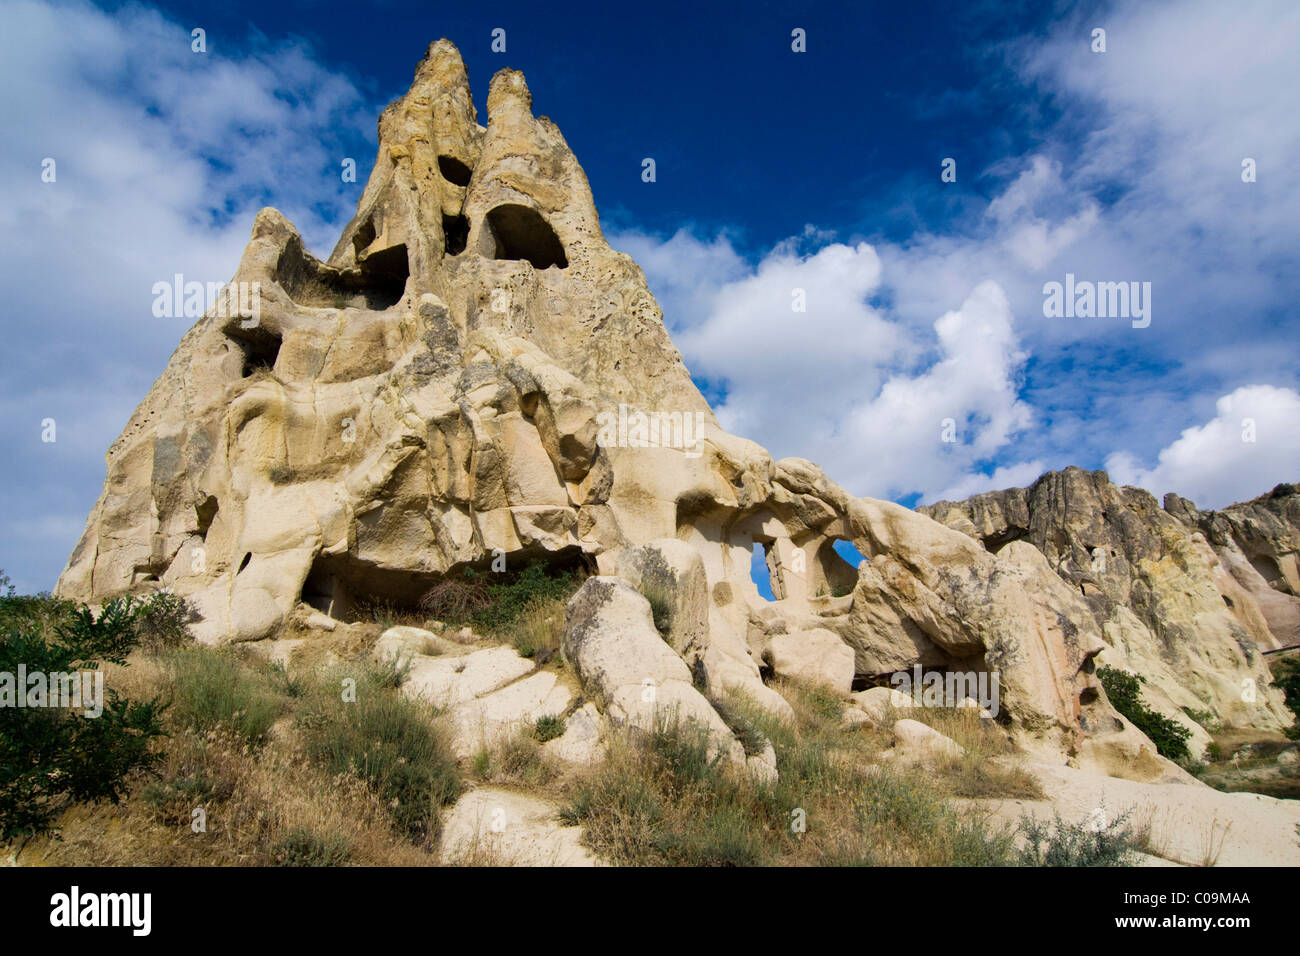 Rock church dans l'open air museum, UNESCO World Heritage Site, Goreme, Cappadoce, Anatolie centrale, Turquie, Asie Banque D'Images